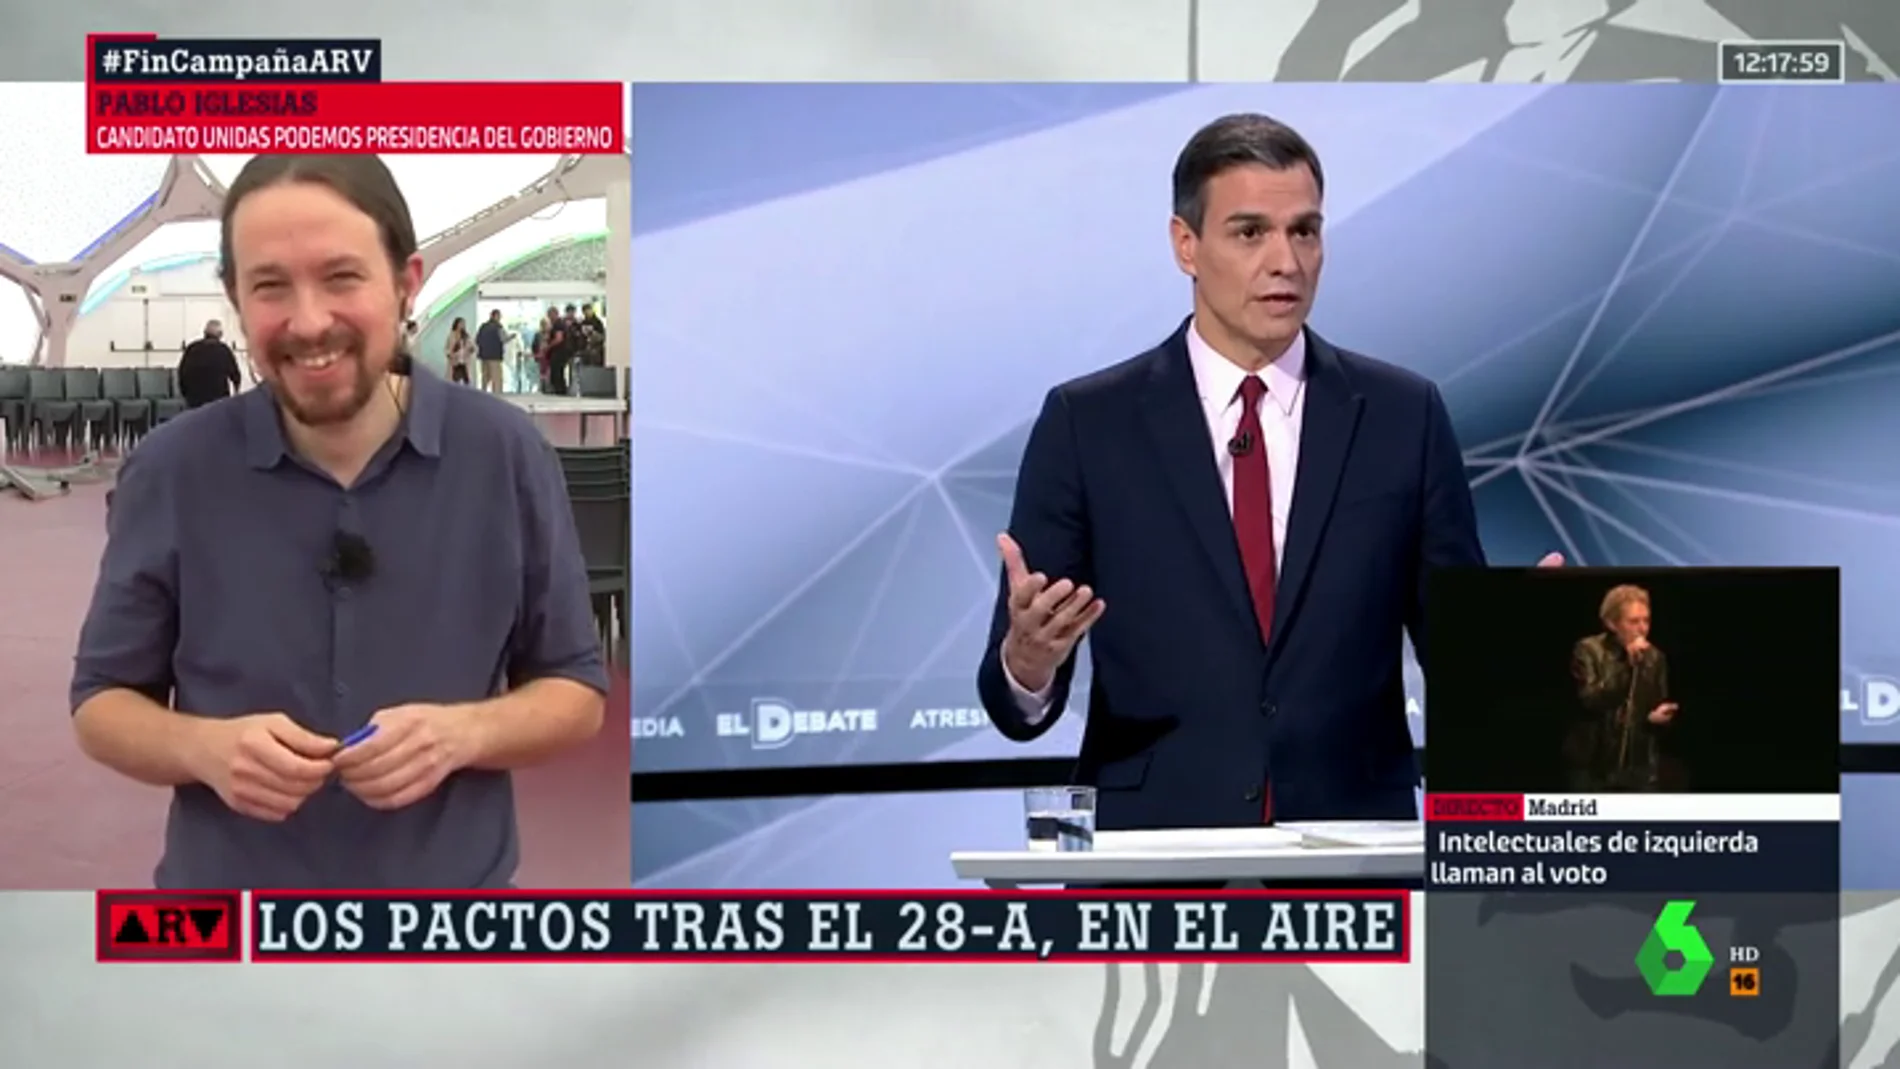 El error de Pablo Iglesias que provocó su divertida anécdota con Pedro Sánchez fuera de cámaras en El Debate Decisivo